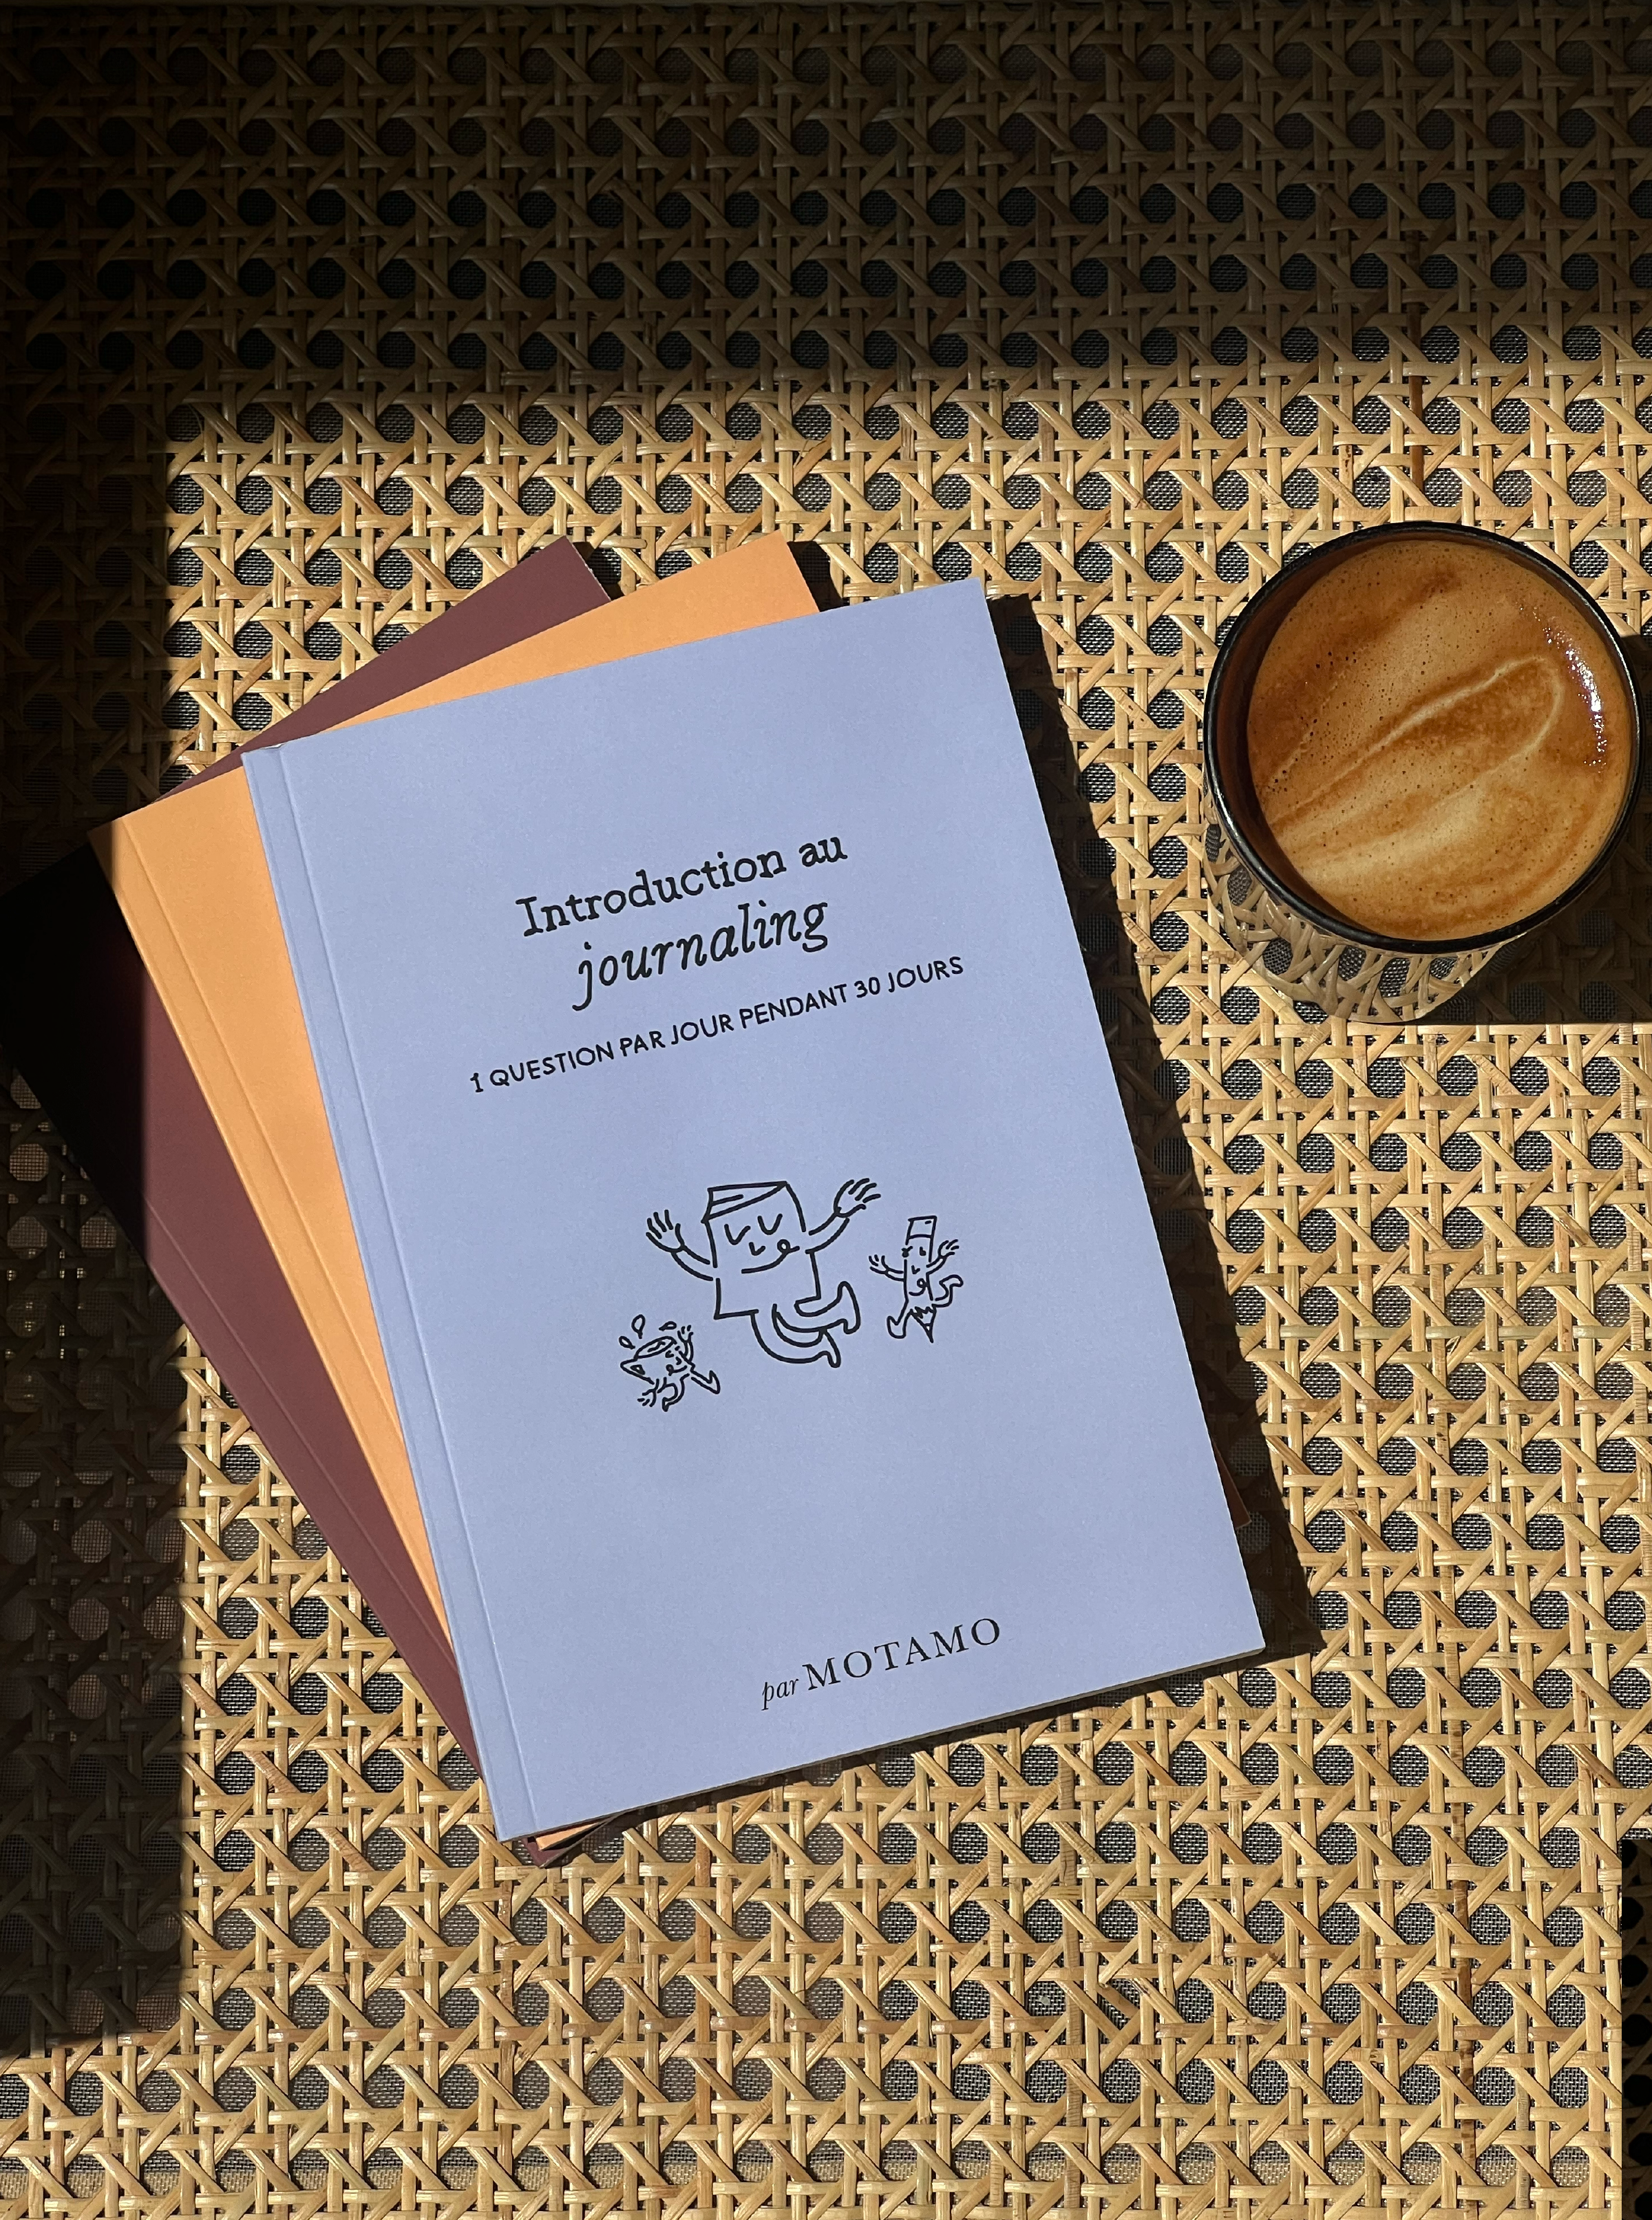 Introduction au Journaling - Une question par jour pendant 30 jours (Lilac)